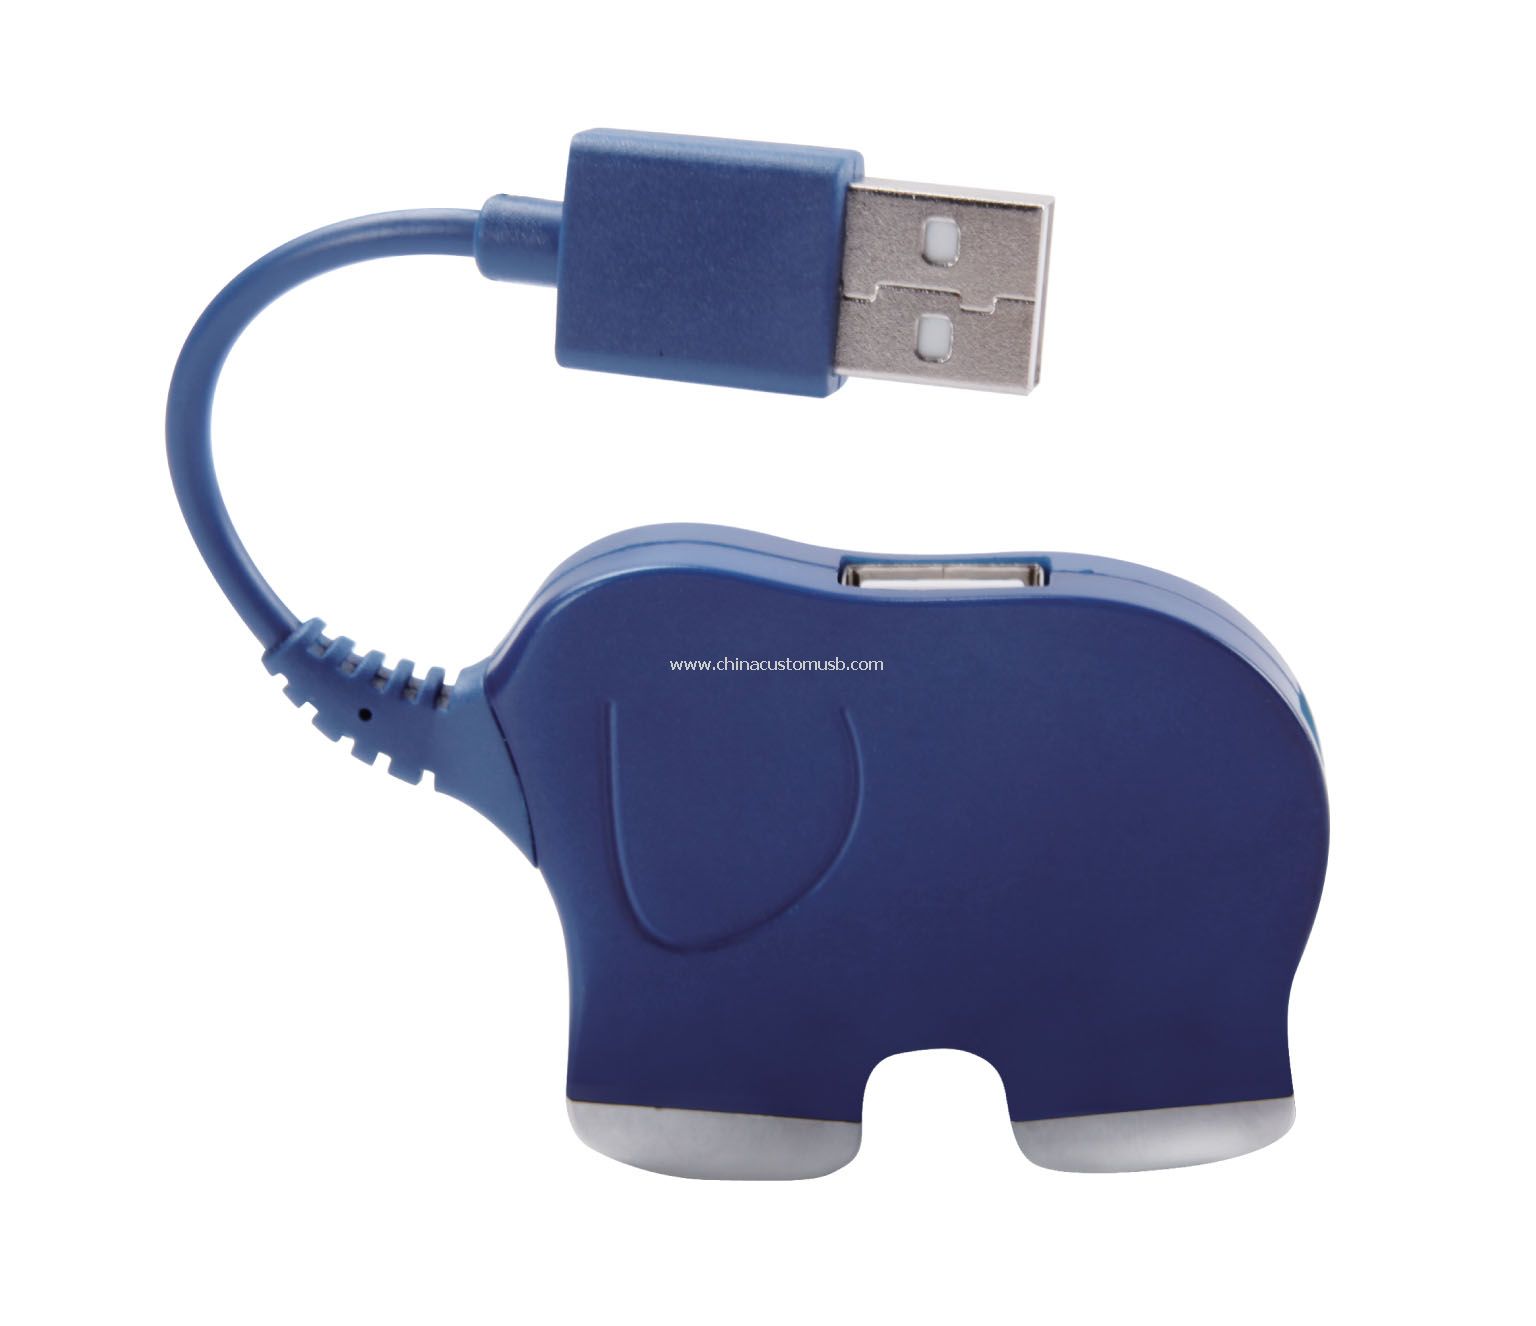 Hub USB de elefante